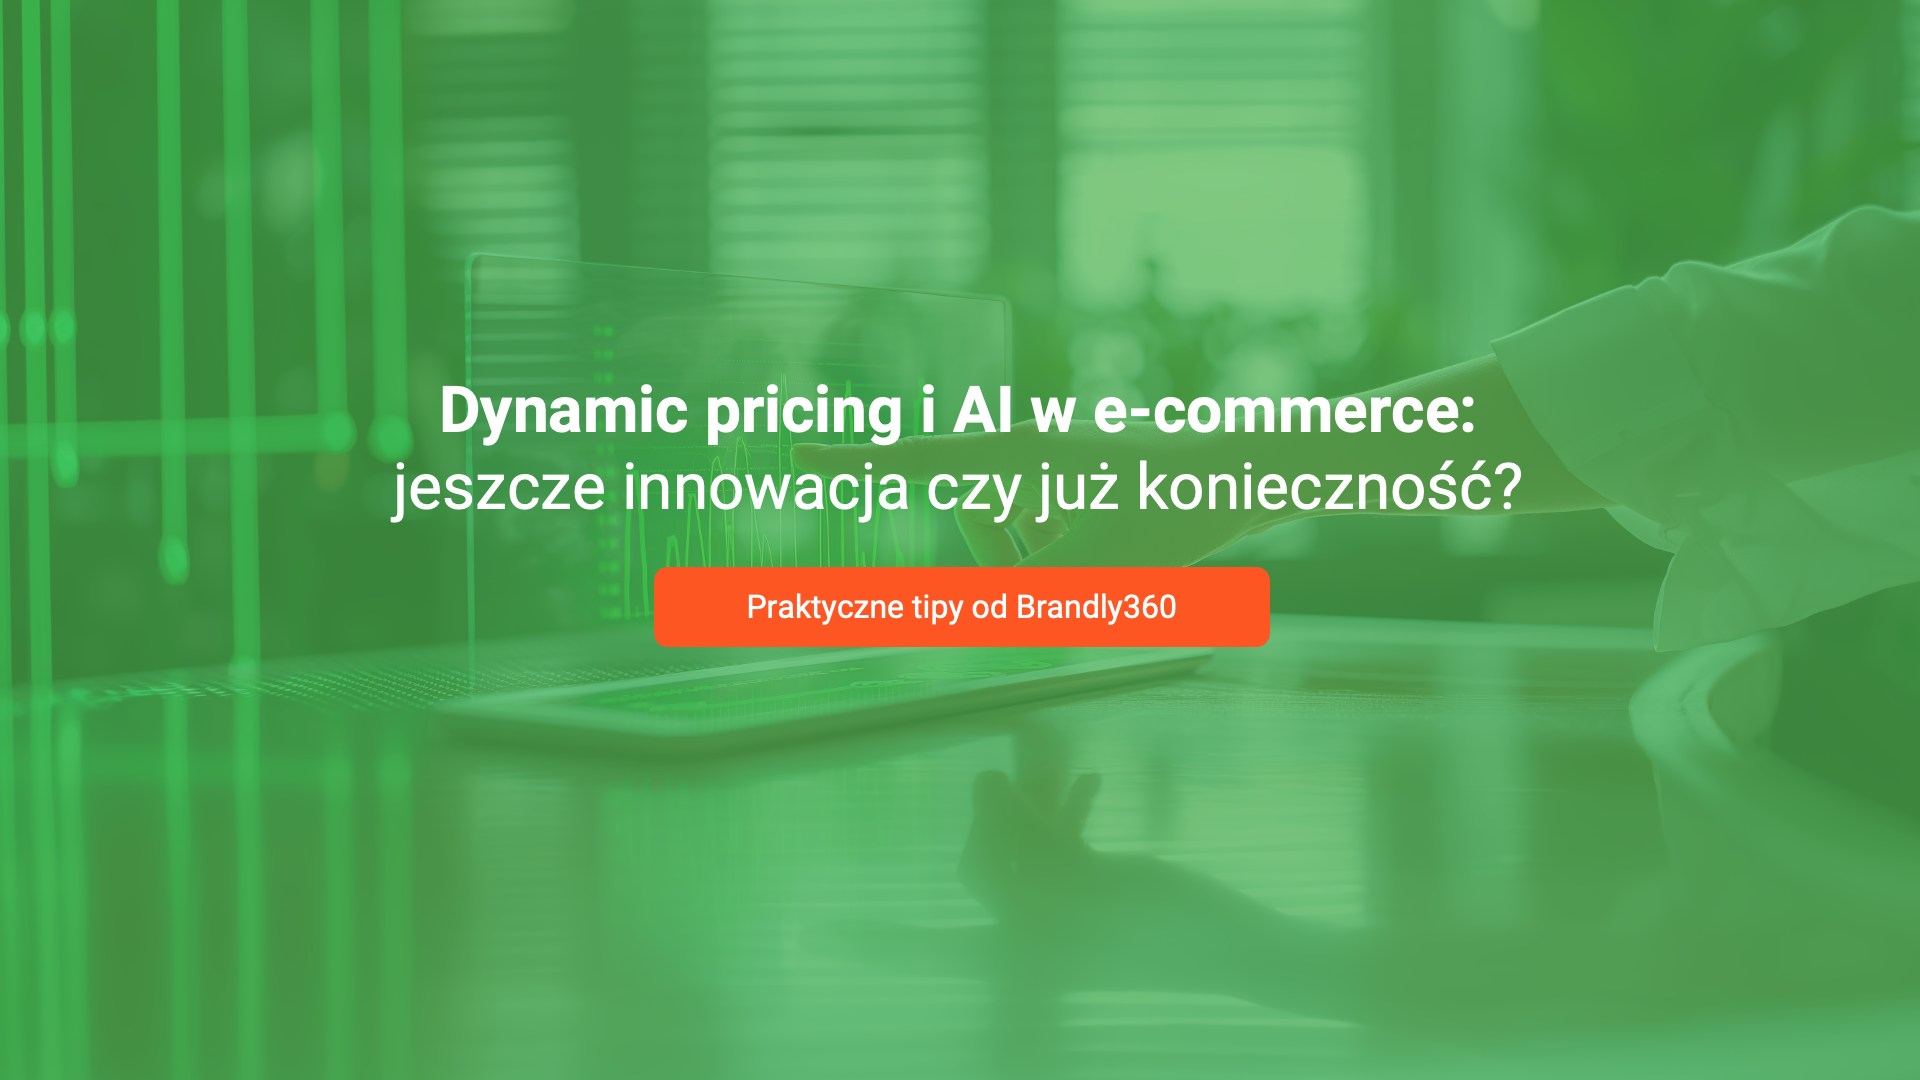 „Dynamic pricing i AI w e-commerce: jeszcze innowacja czy już konieczność?” – oto jest pytanie. Podsumowanie webinaru  